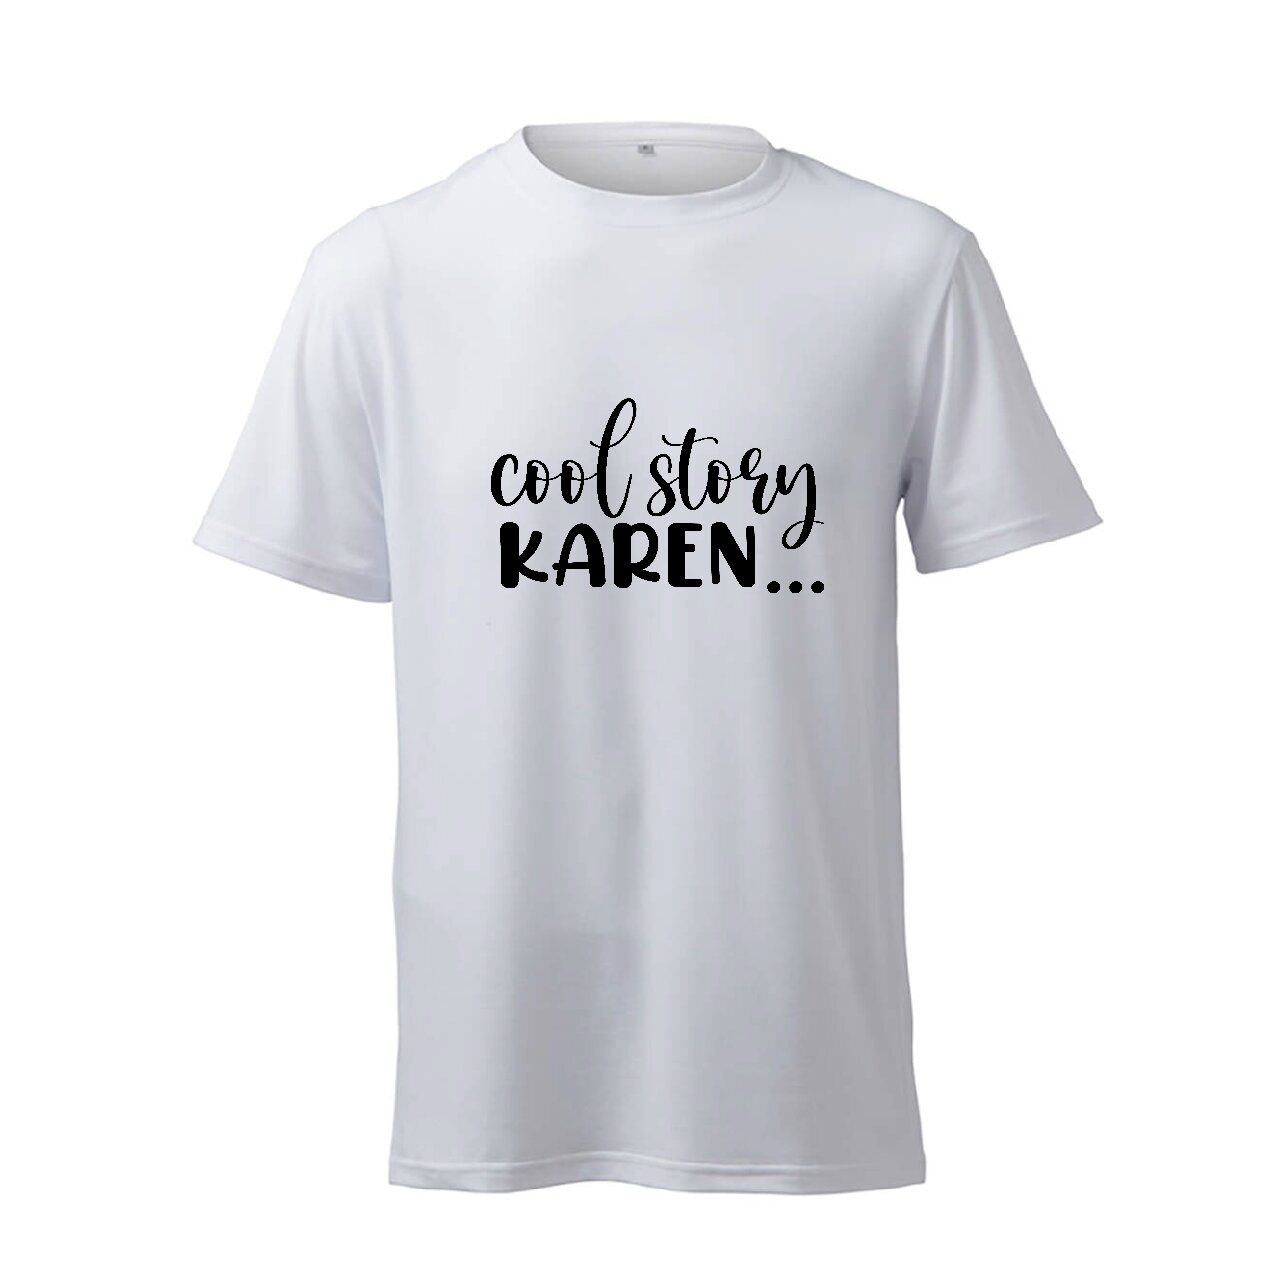 Cool Story Karen... - T-Shirt